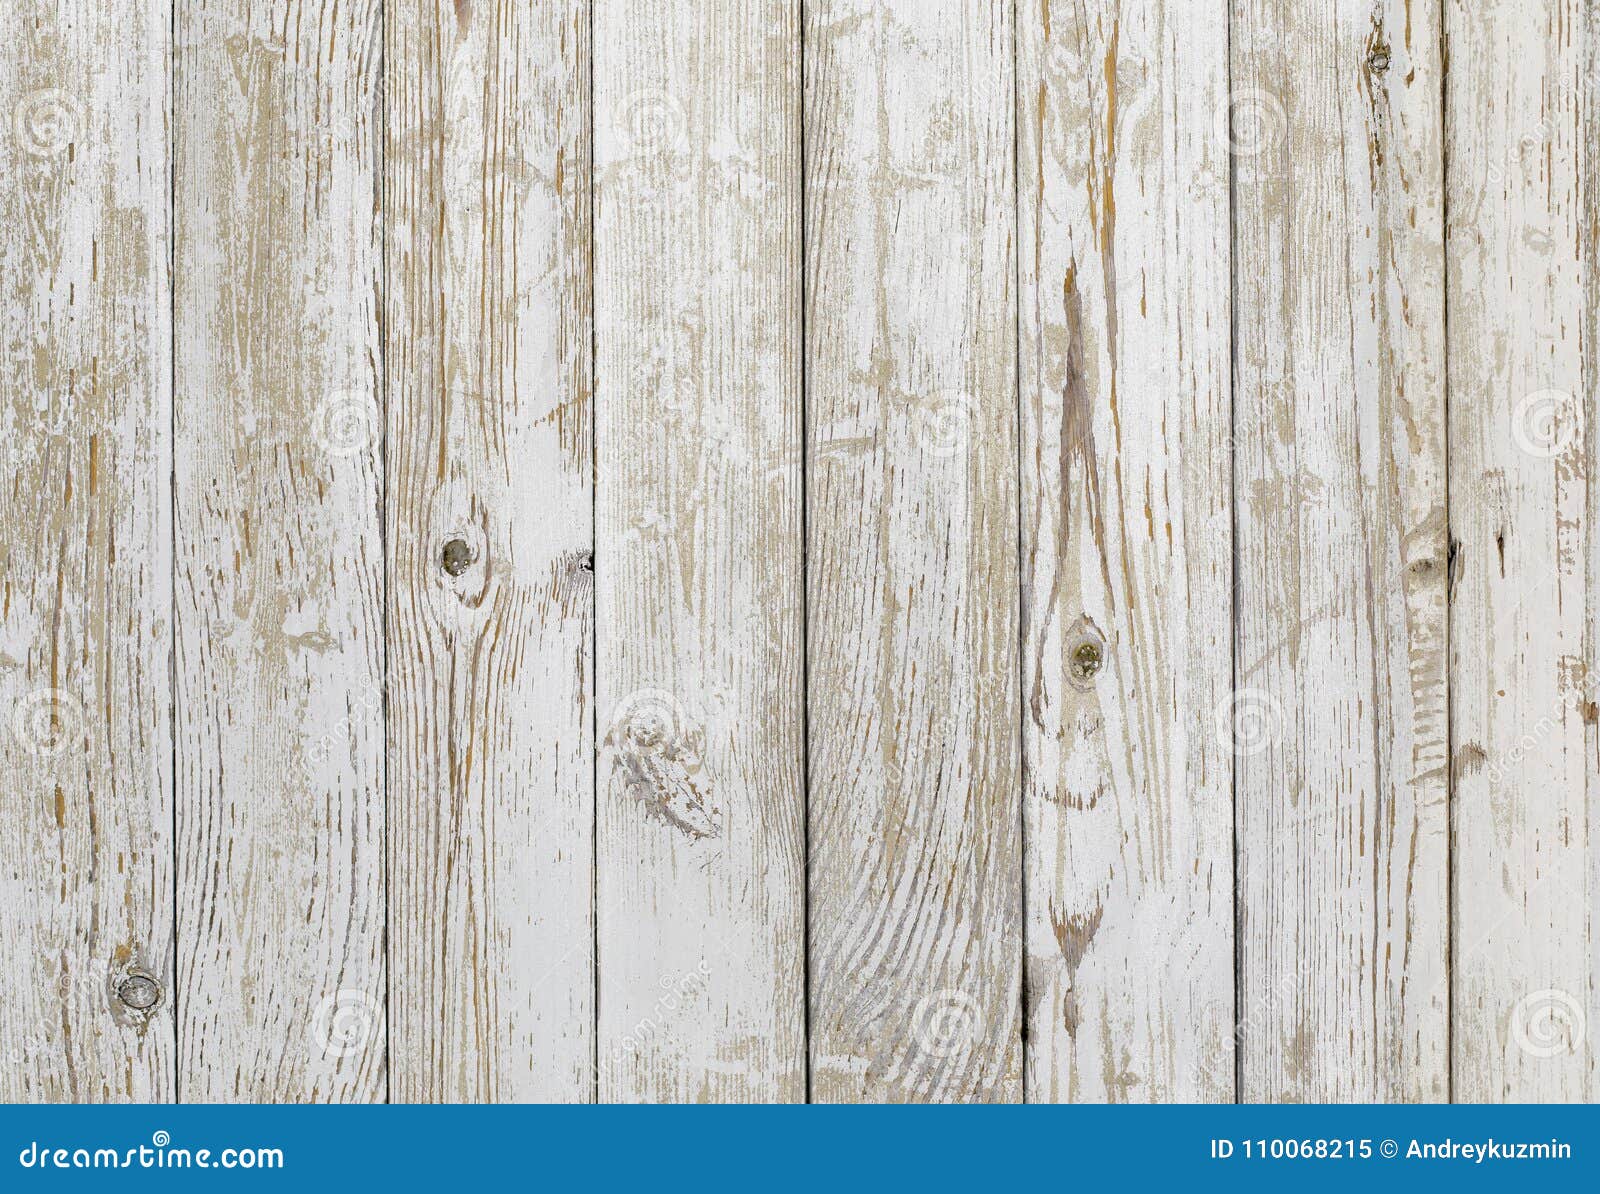 Hình nền gỗ cổ điển sử dụng các vân gỗ truyền thống và các chi tiết tinh tế để tạo ra một cái nhìn tuyệt đẹp. Hãy dành ít phút để chiêm ngưỡng vẻ đẹp cổ điển và thanh lịch này.